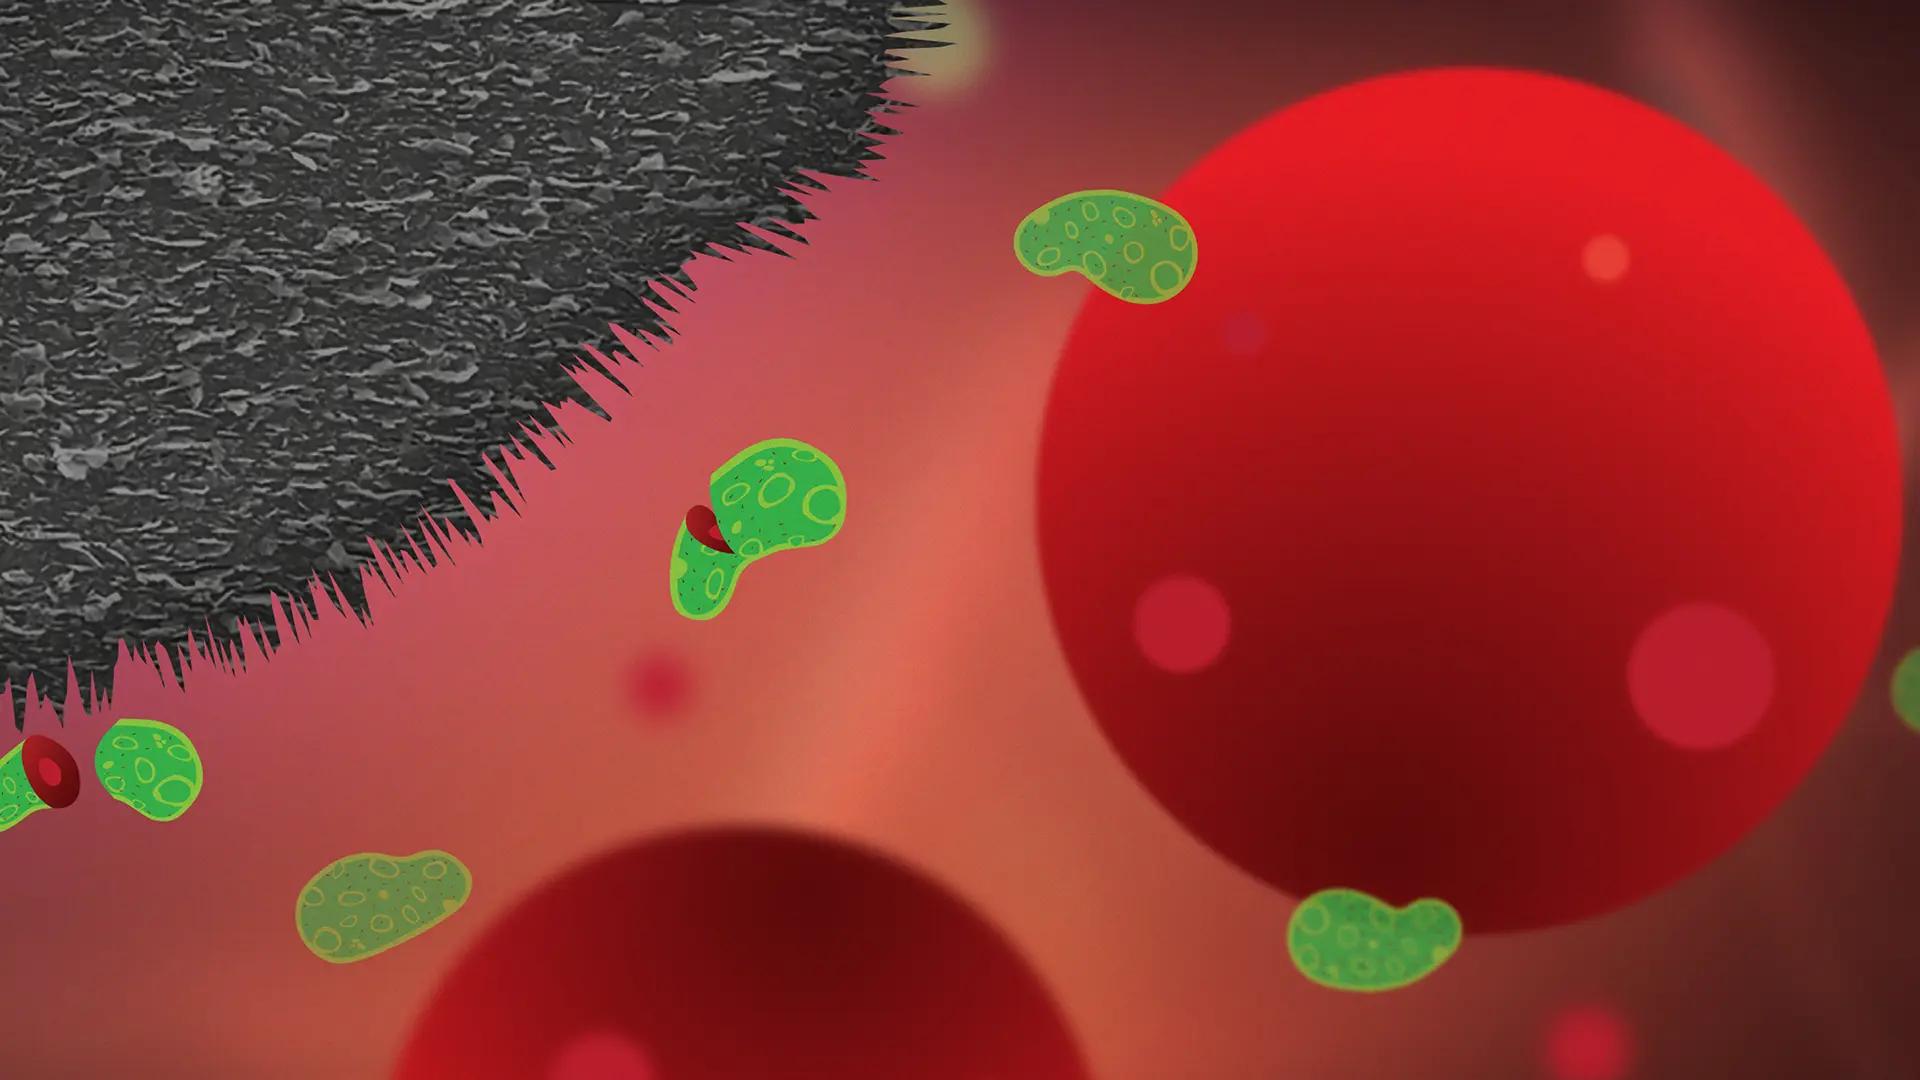 Grafinanoflagor som skär sönder bakterier, illustration. 